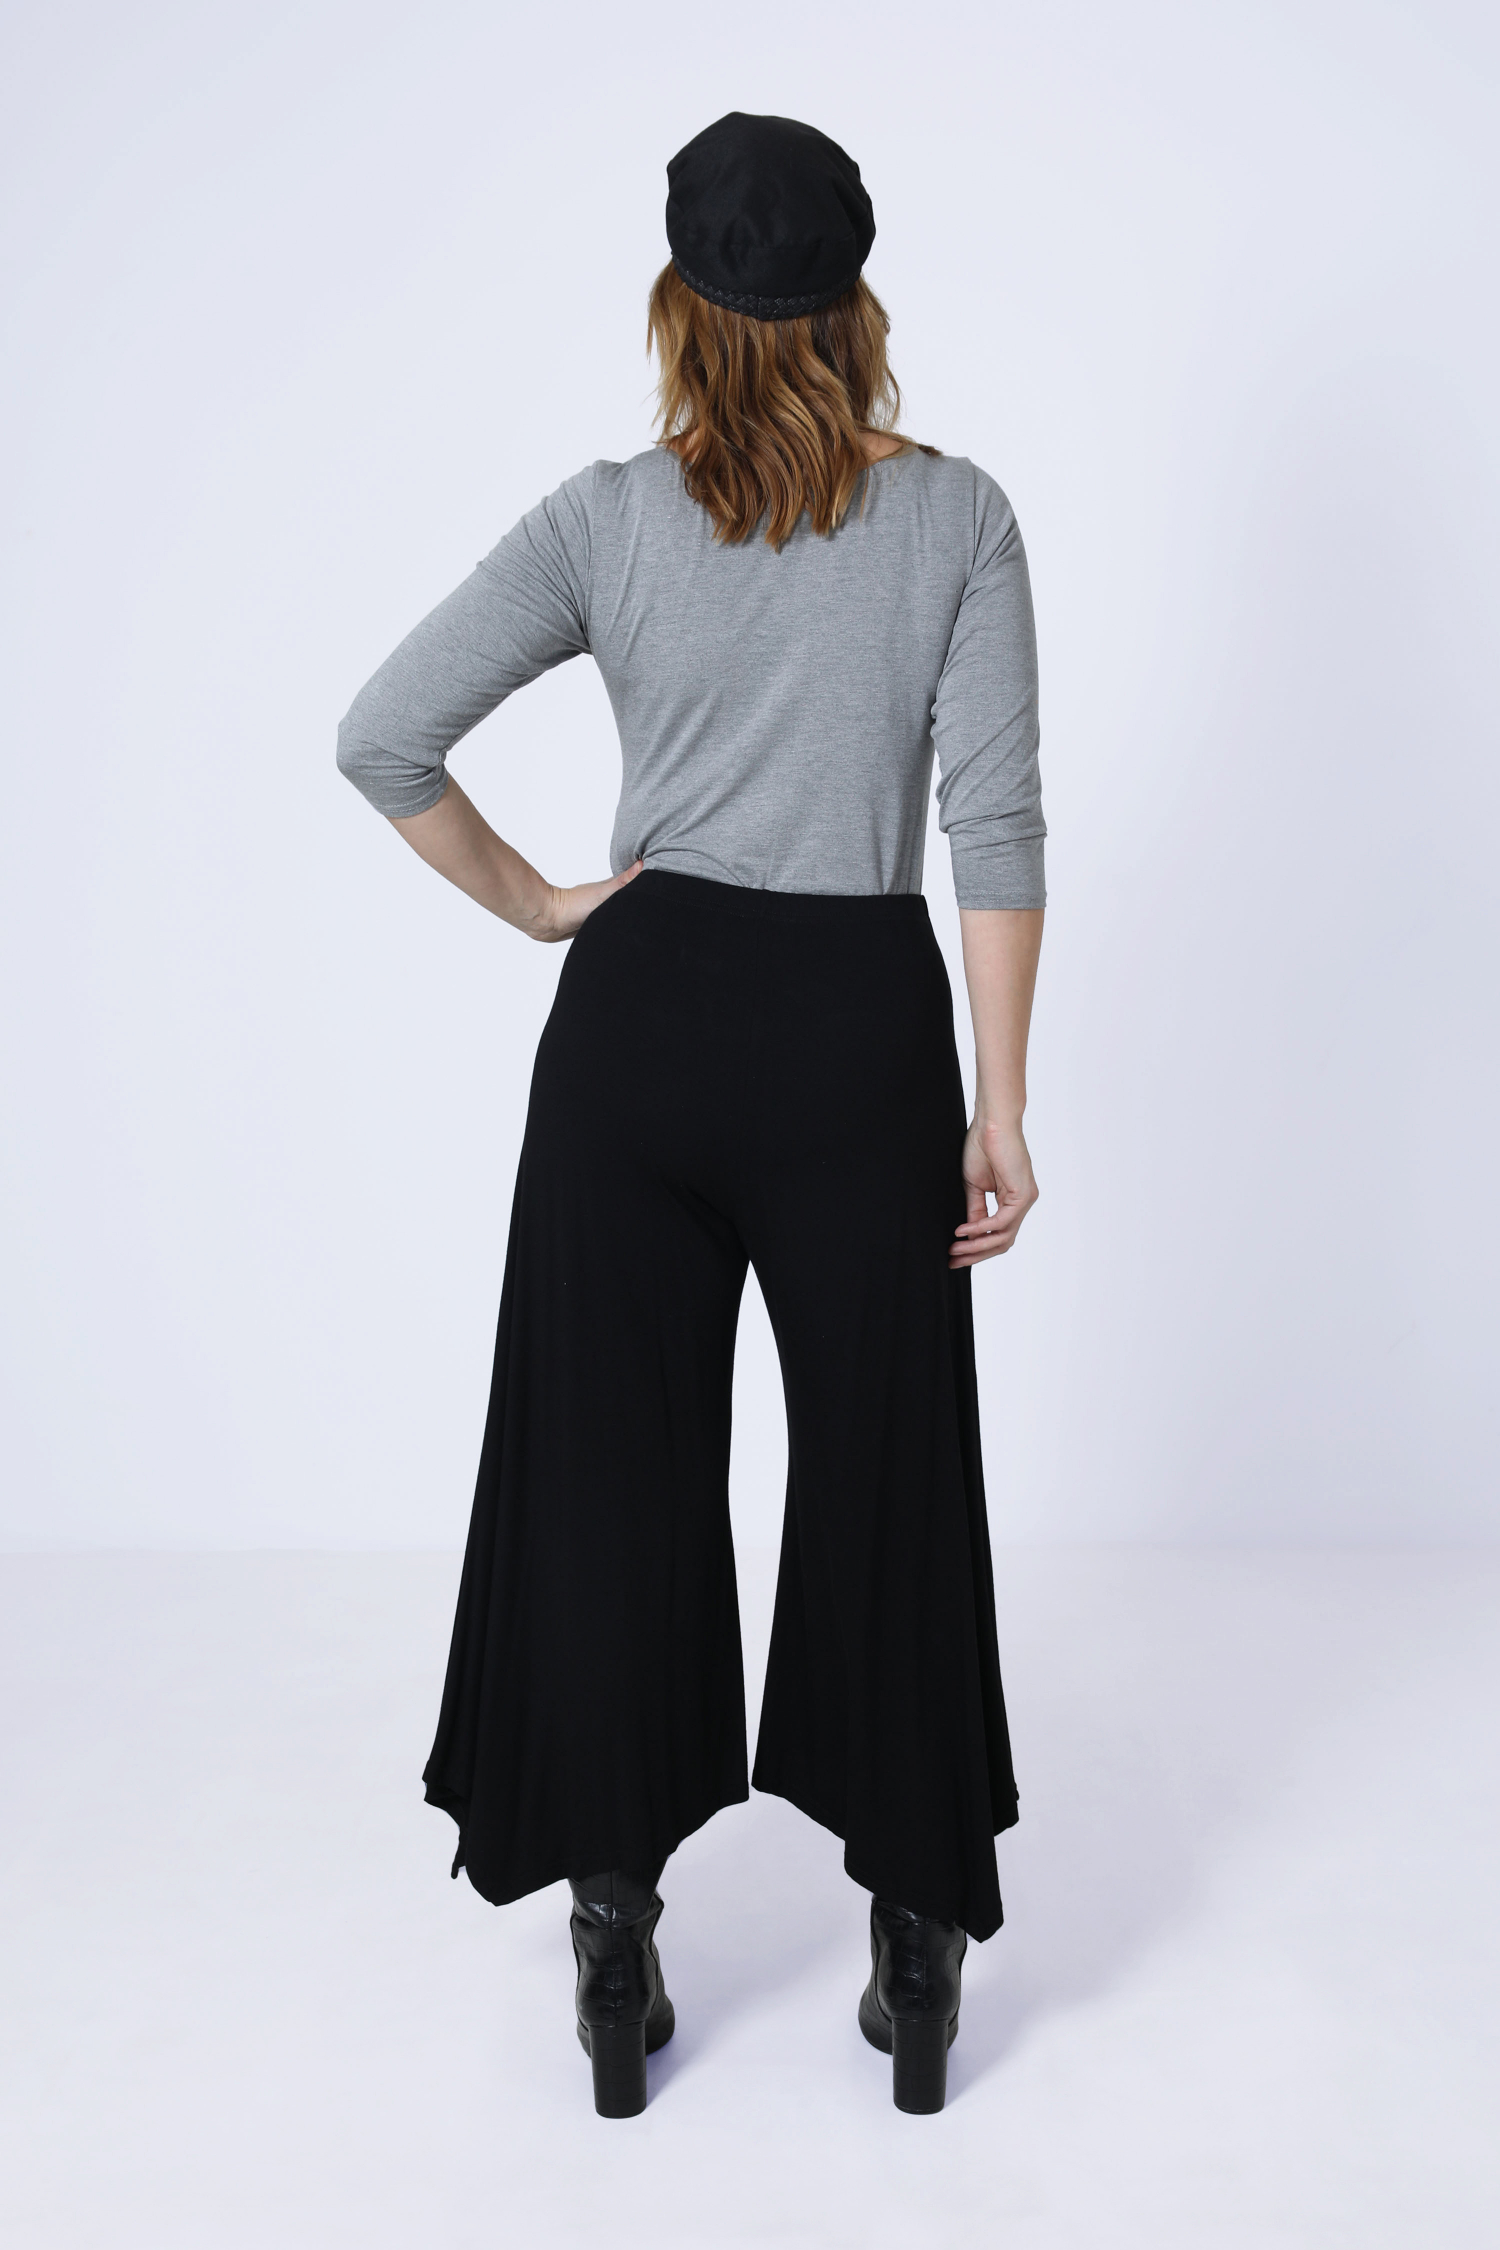 Plain knit culotte skirt pants